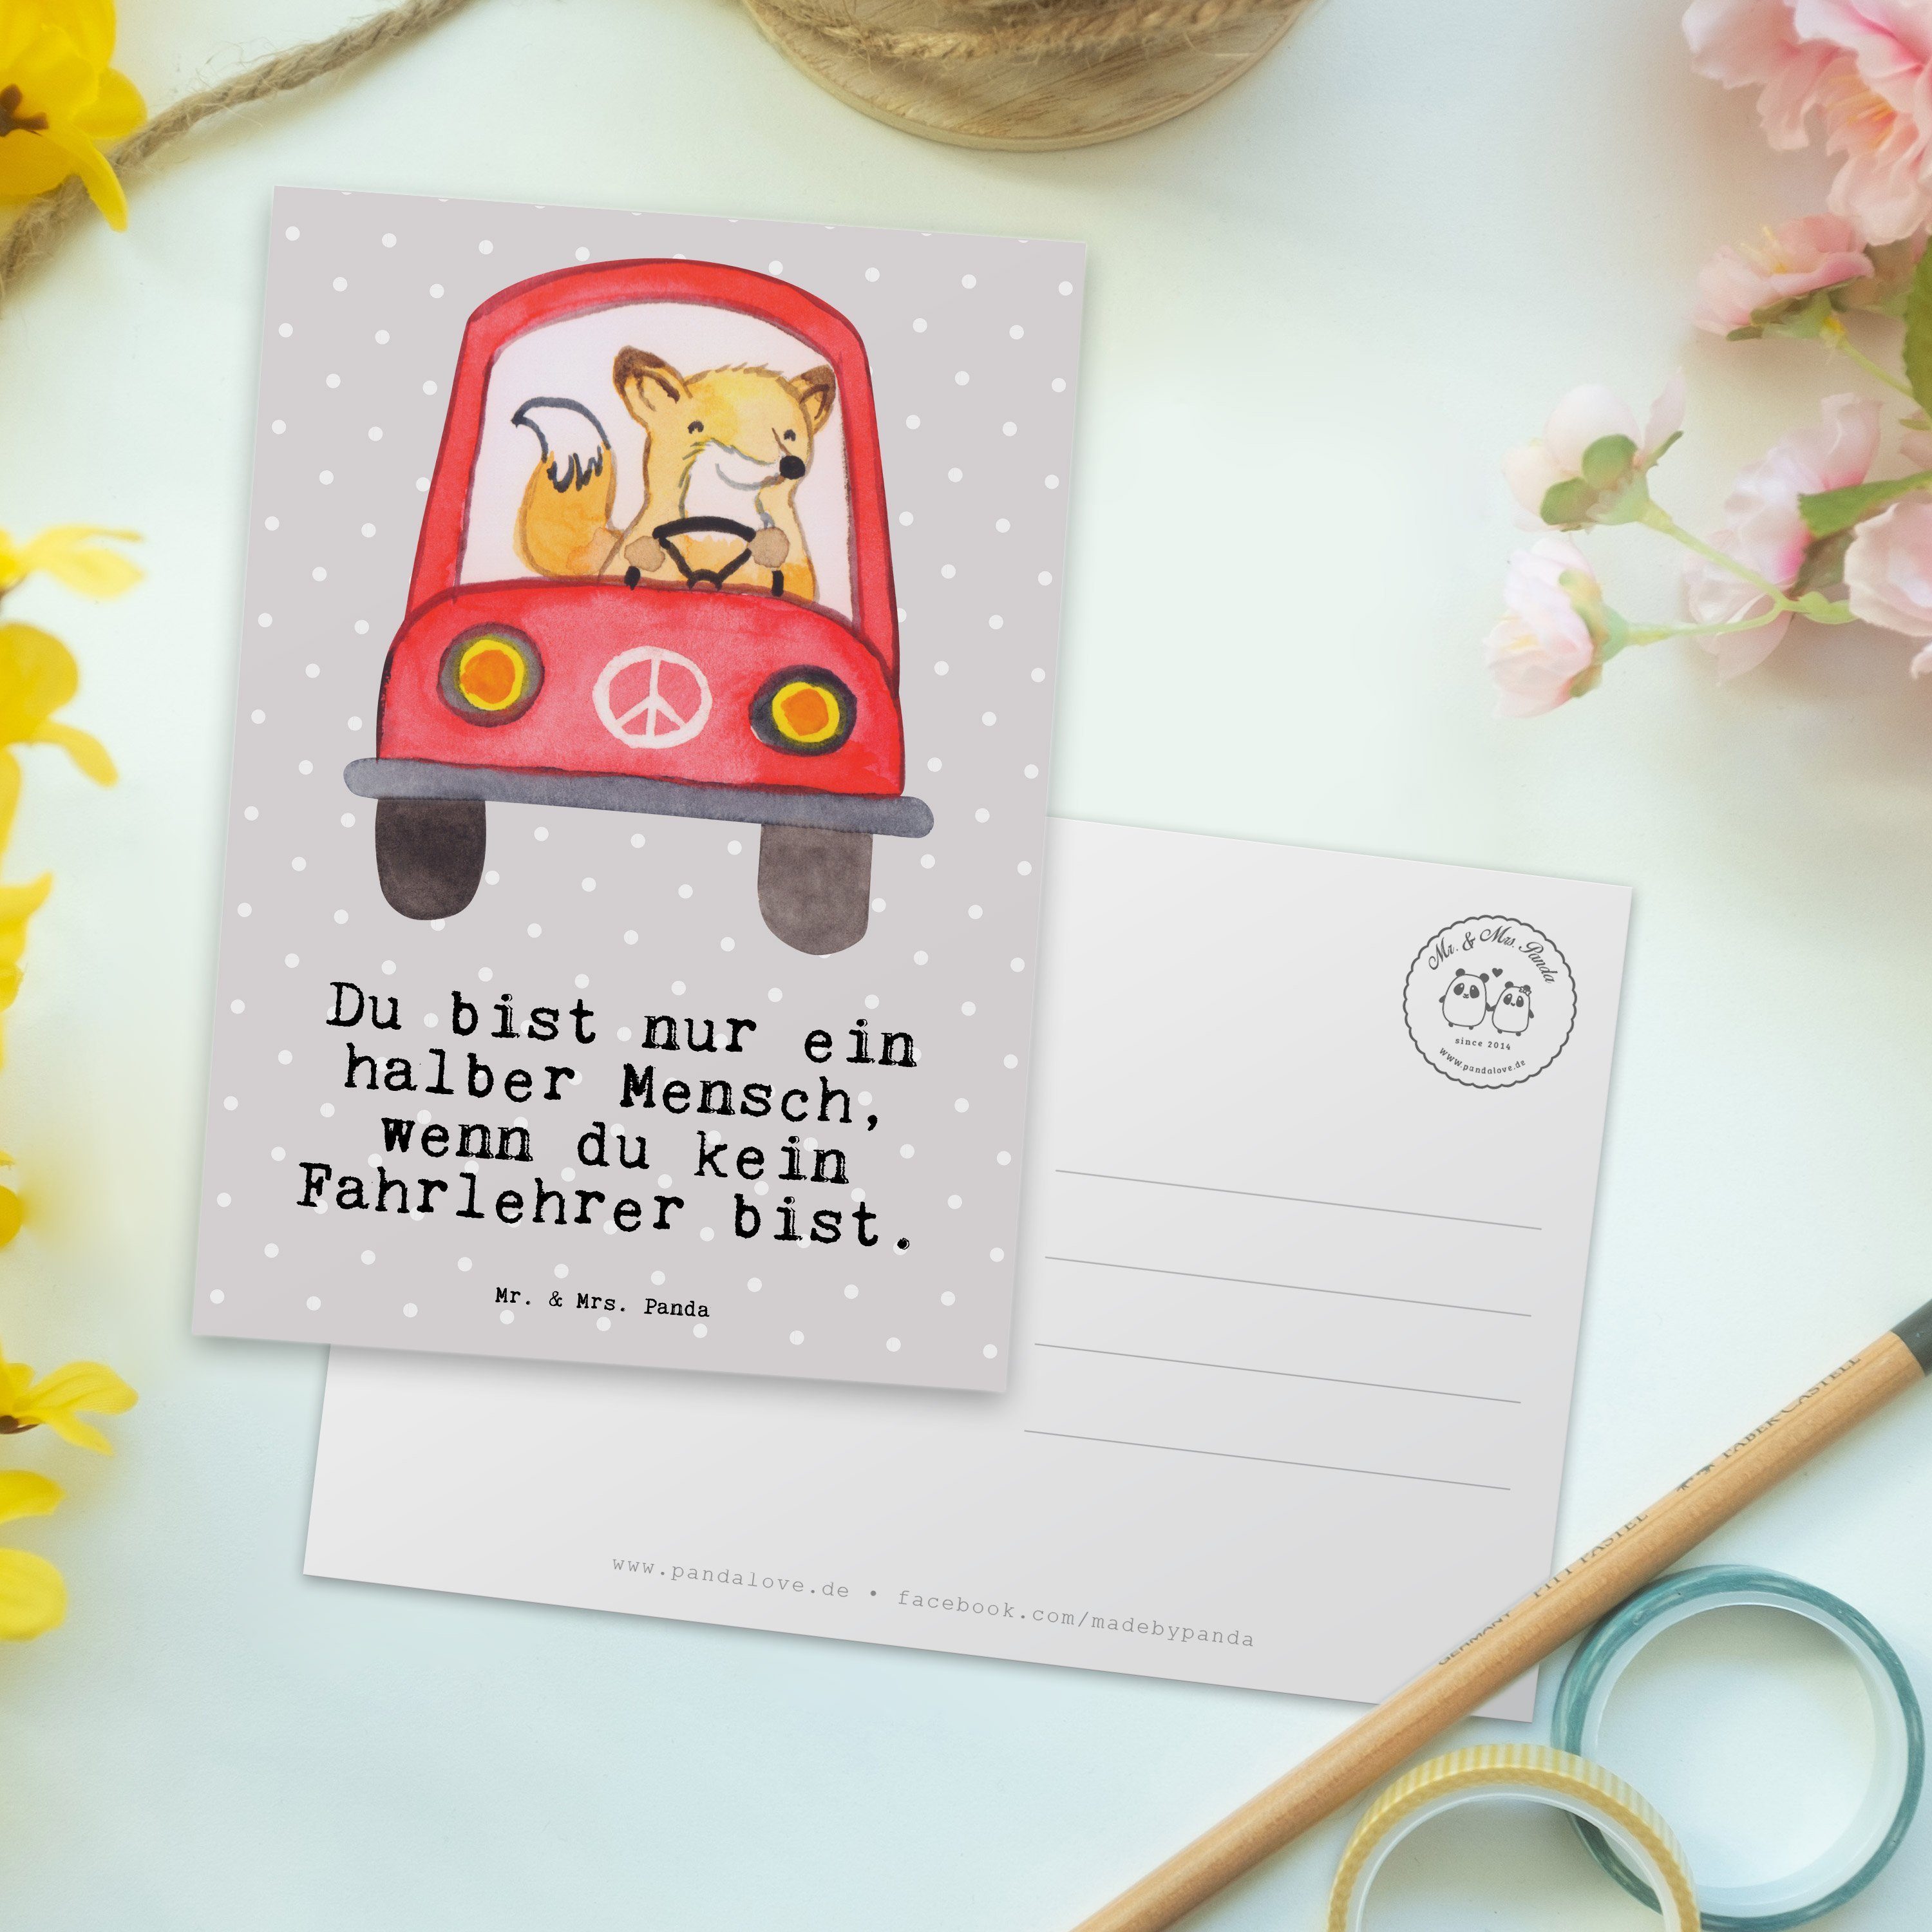 Mrs. Panda Fahrlehrer - mit Postkarte Pastell Geschenk, Einladung & Mr. Herz - Ausbildung, Grau